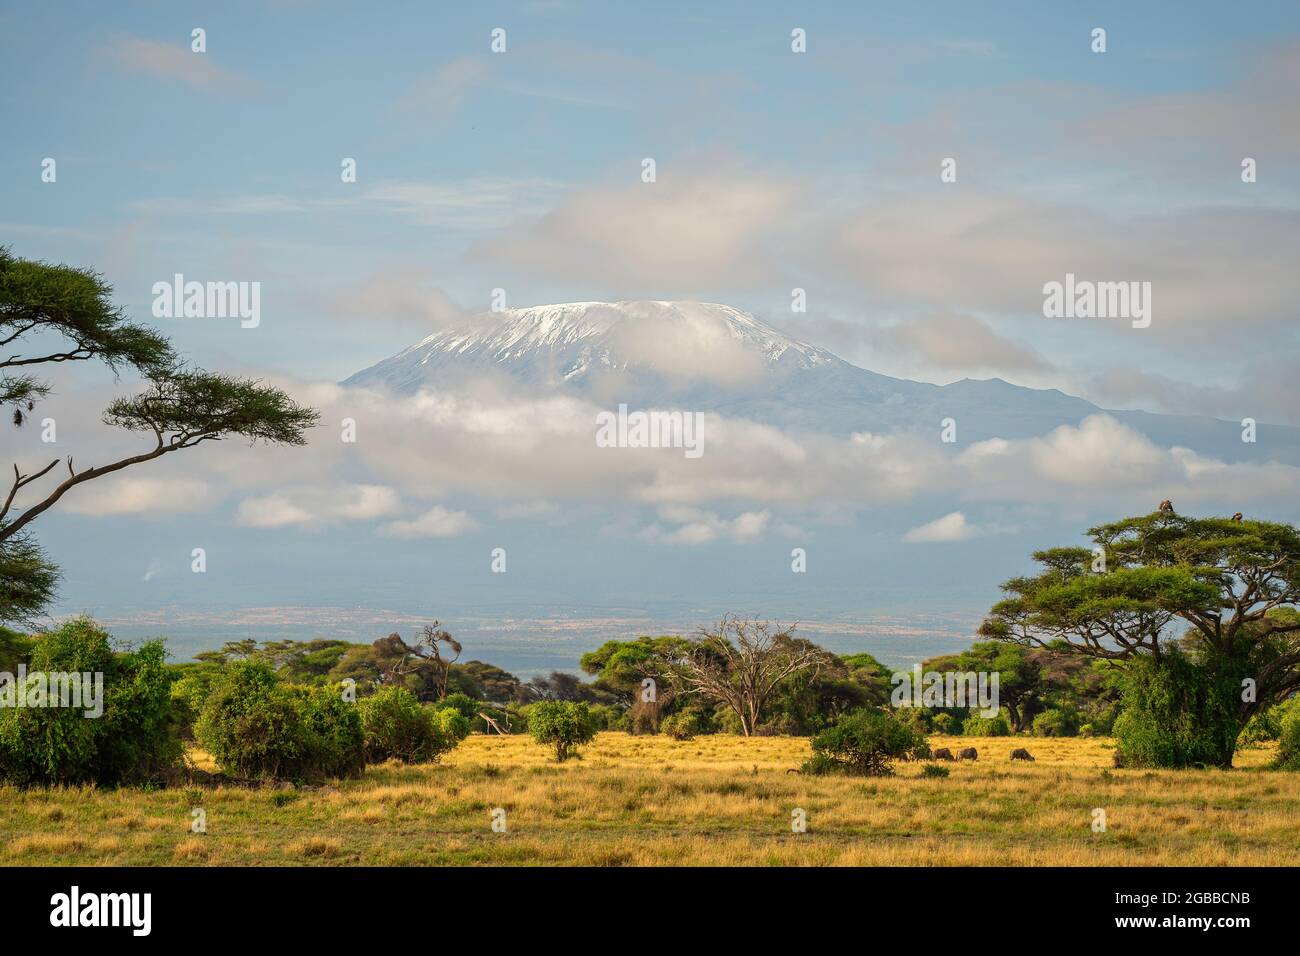 Mount Kilimanjaro from Amboseli National Park, Kenya, East Africa, Africa Stock Photo